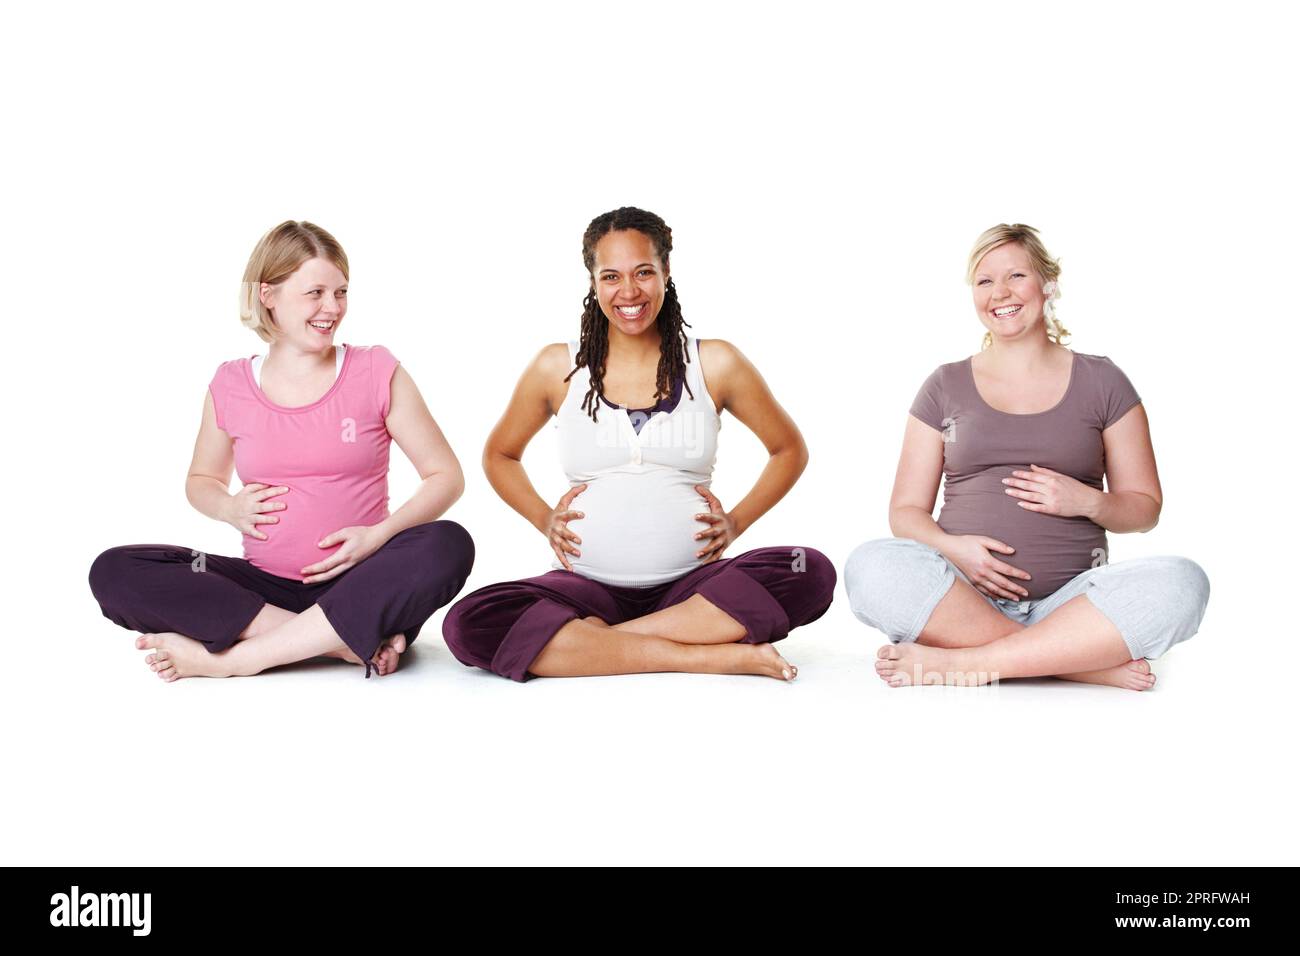 Schwangere Frauen oder Freunde bereit für Yoga, Pilates oder Geburtstagskurs für Hilfe, Unterstützung und Gemeinschaft oder Wellness. Glückliche Mutter mit Lächeln und Hoffnung auf das Wachstum des Lebens, auf dem Boden mit weißem Hintergrund Stockfoto